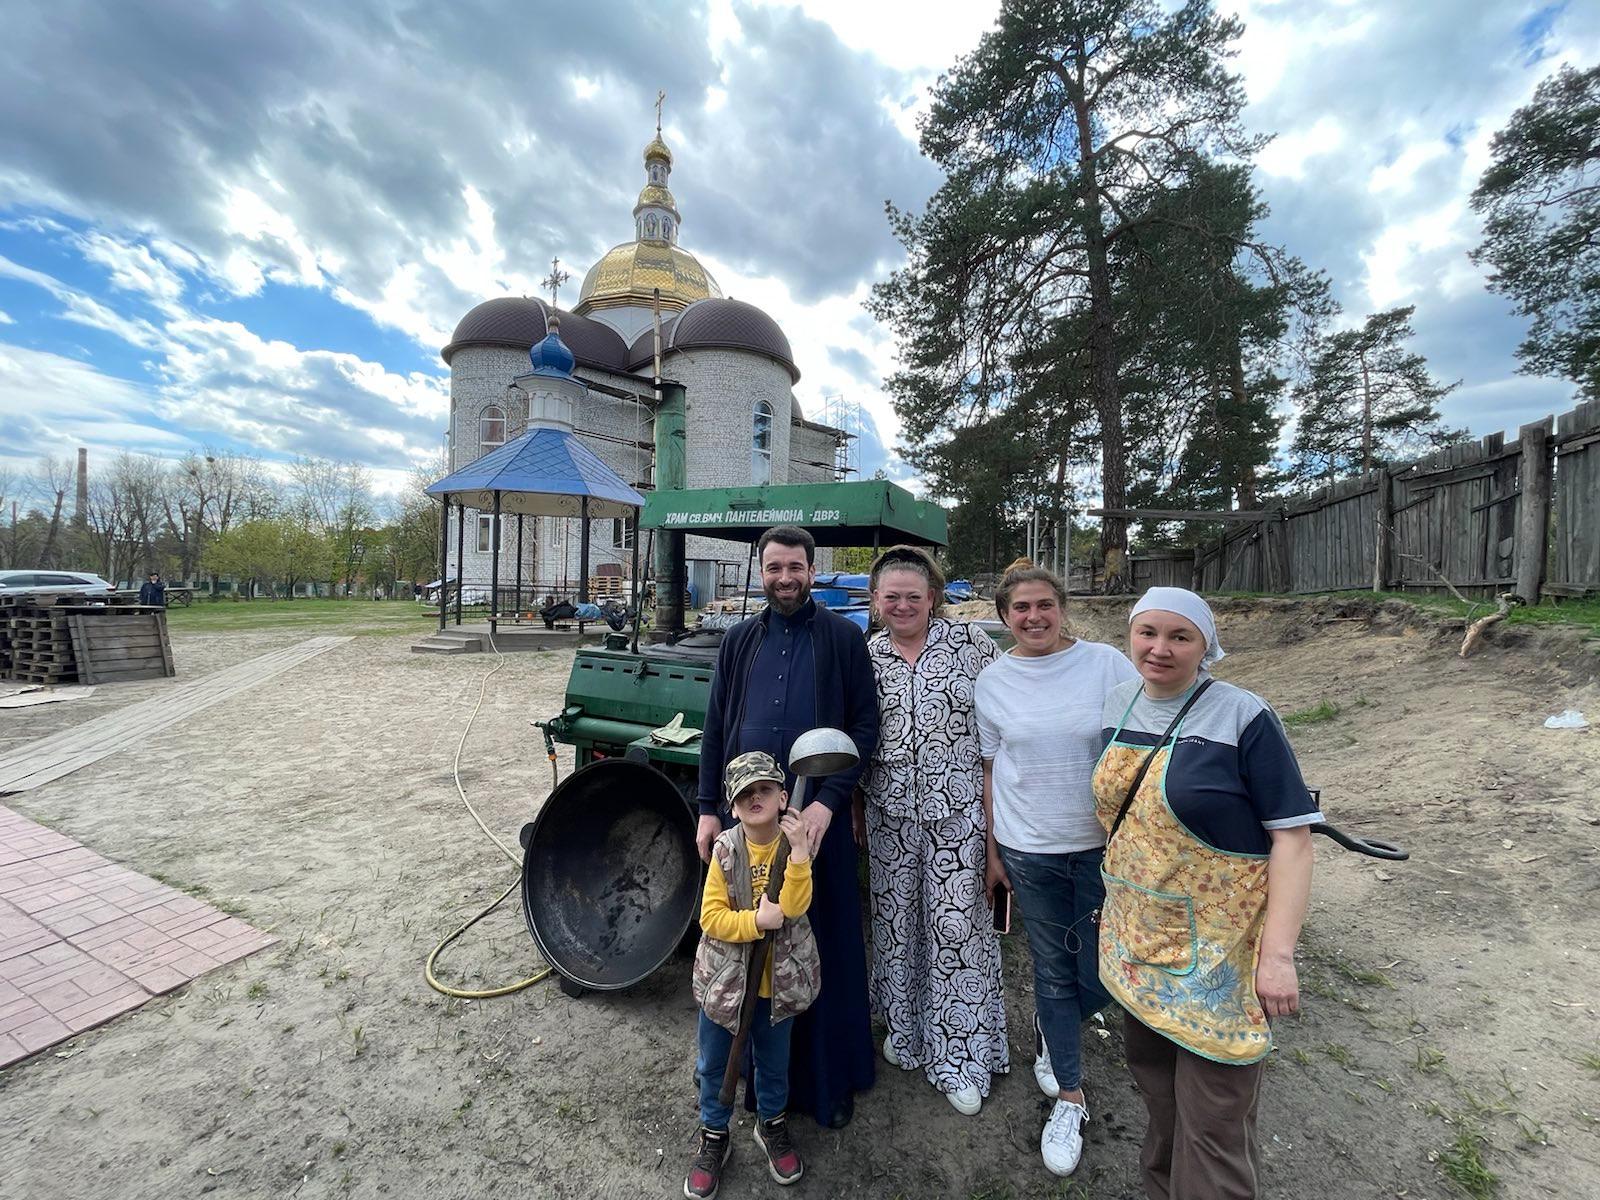   Ein Zentrum solidarischen Widerstandes | Eine orthodoxe Gemeinde bietet der Bevölkerung in Kiew Schutz  